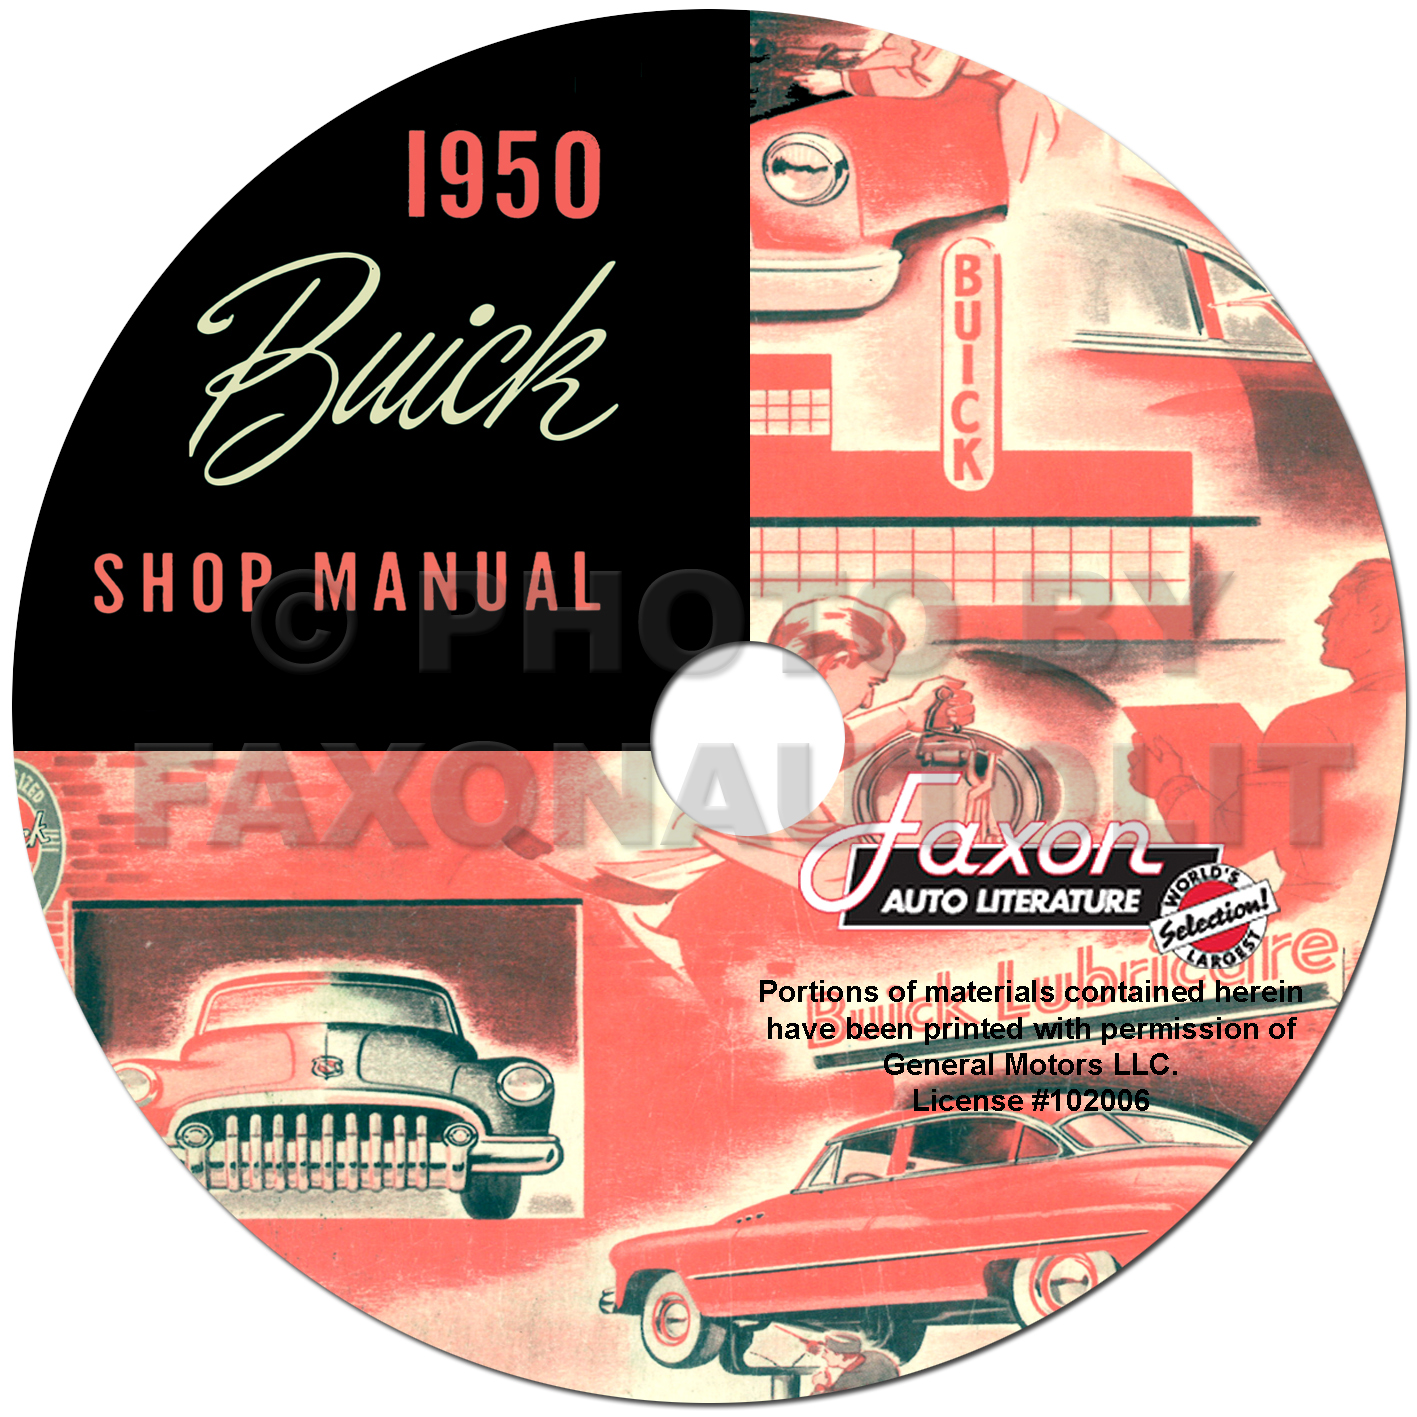 1950 Buick Repair Shop Manual CD-ROM for Super Special Roadmaster